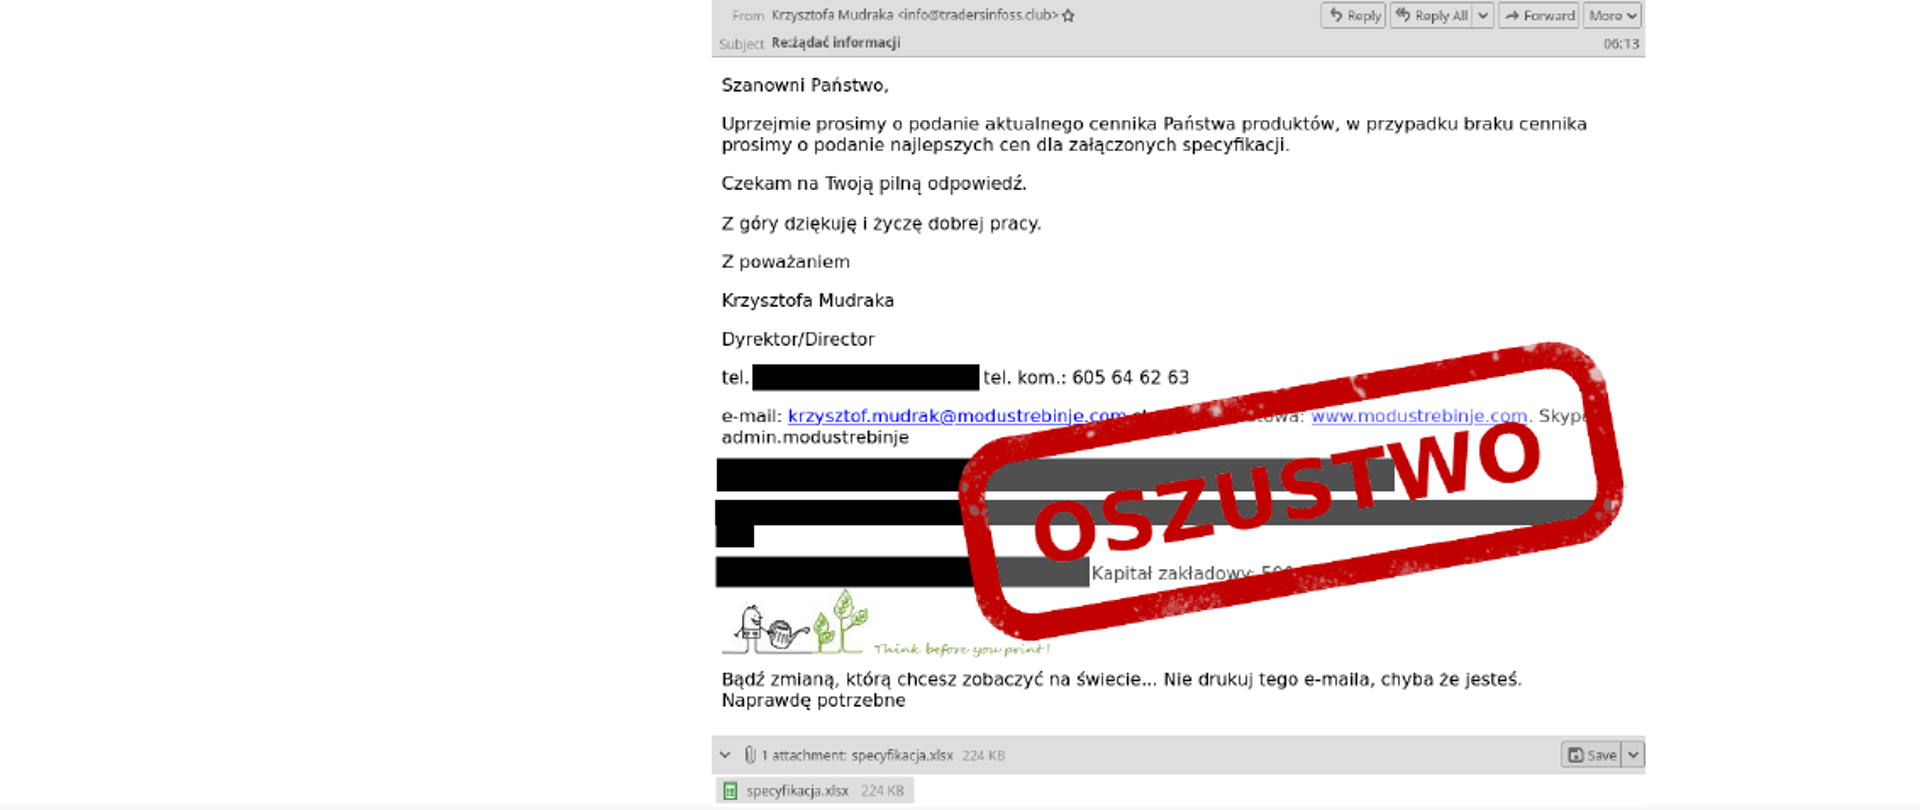 Zdjęcie fałszywej wiadomości e-mail z załącznikami - na zdjęciu czerwony napis oszustwo